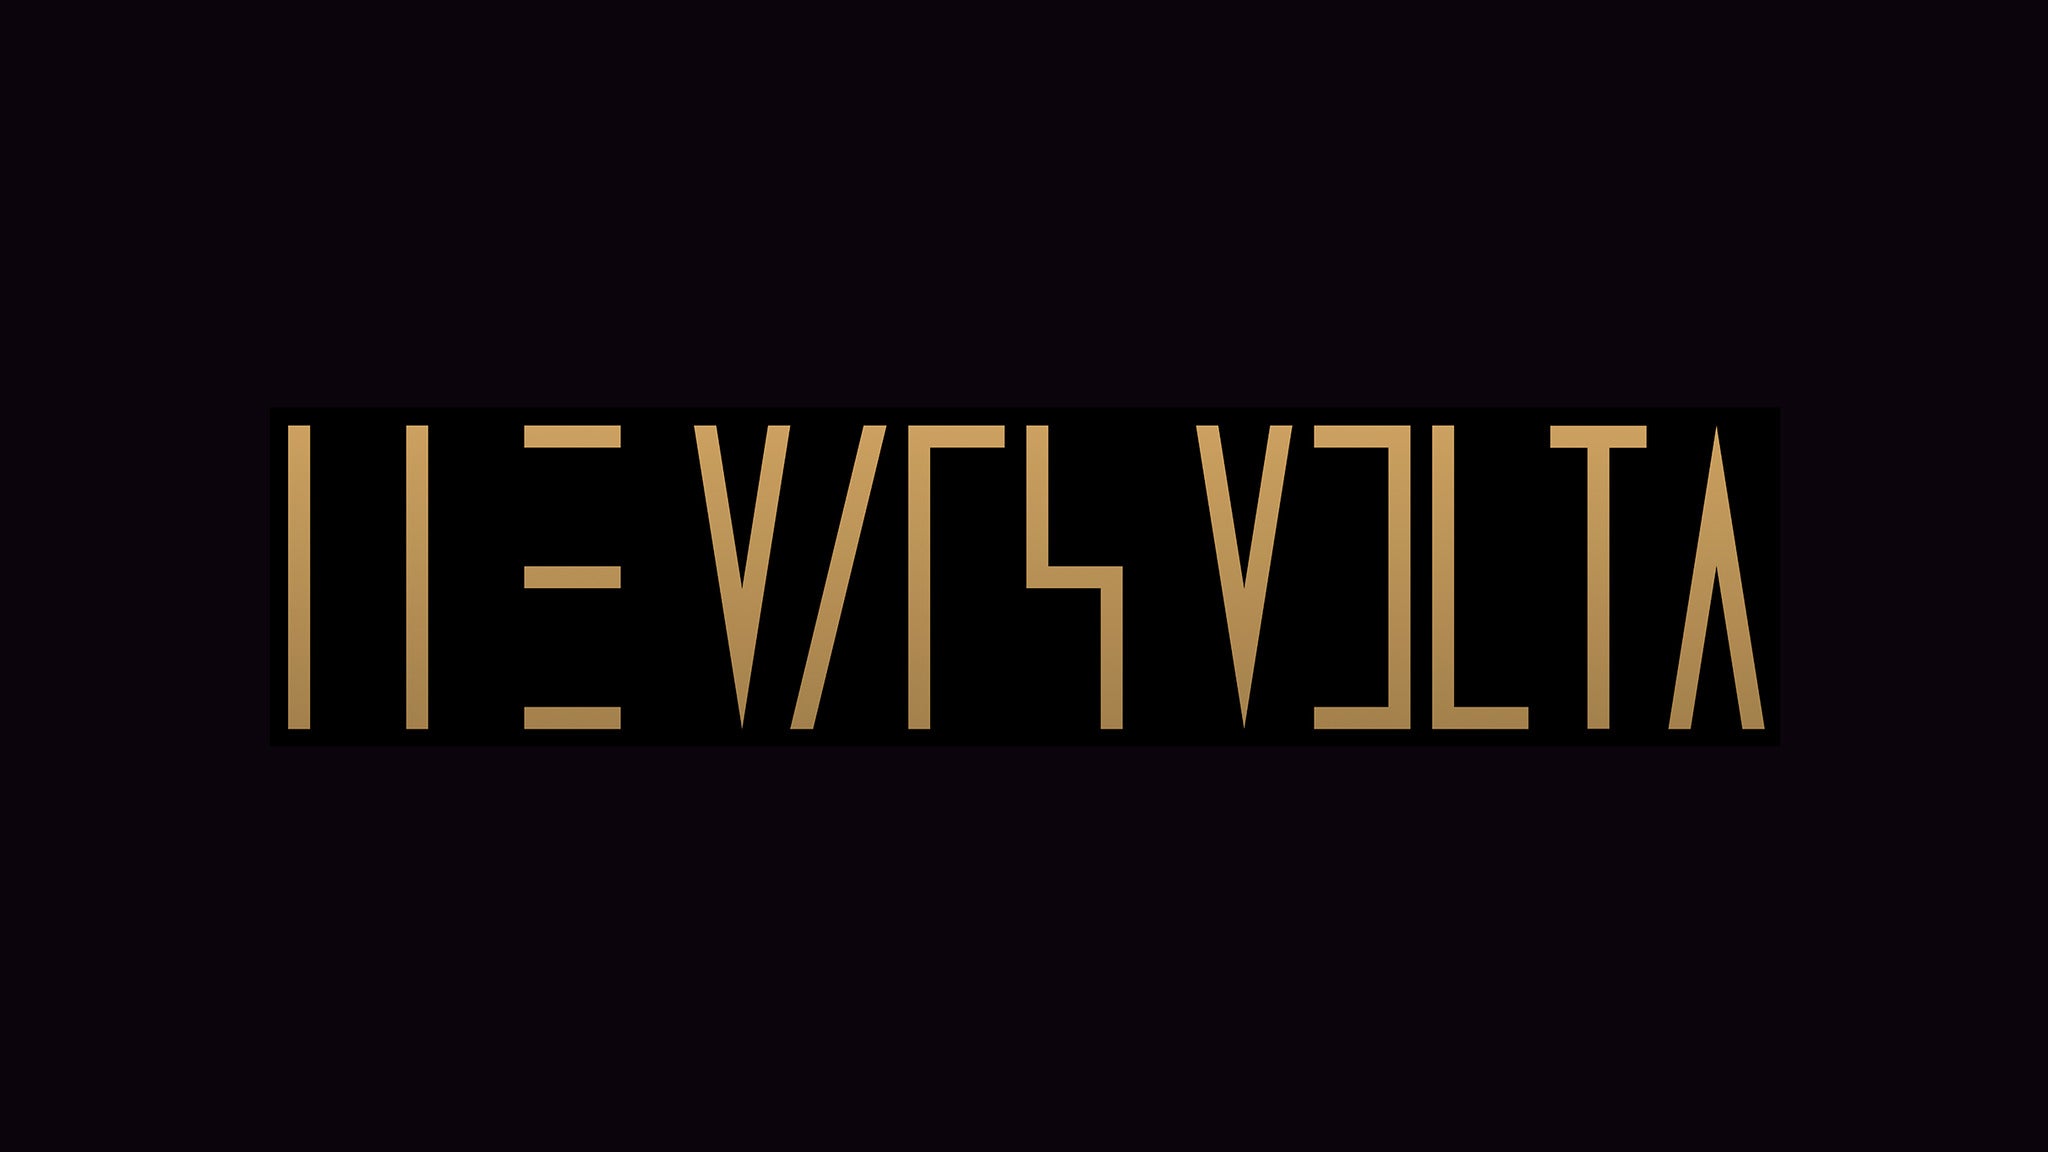 The Mars Volta Tour presale code